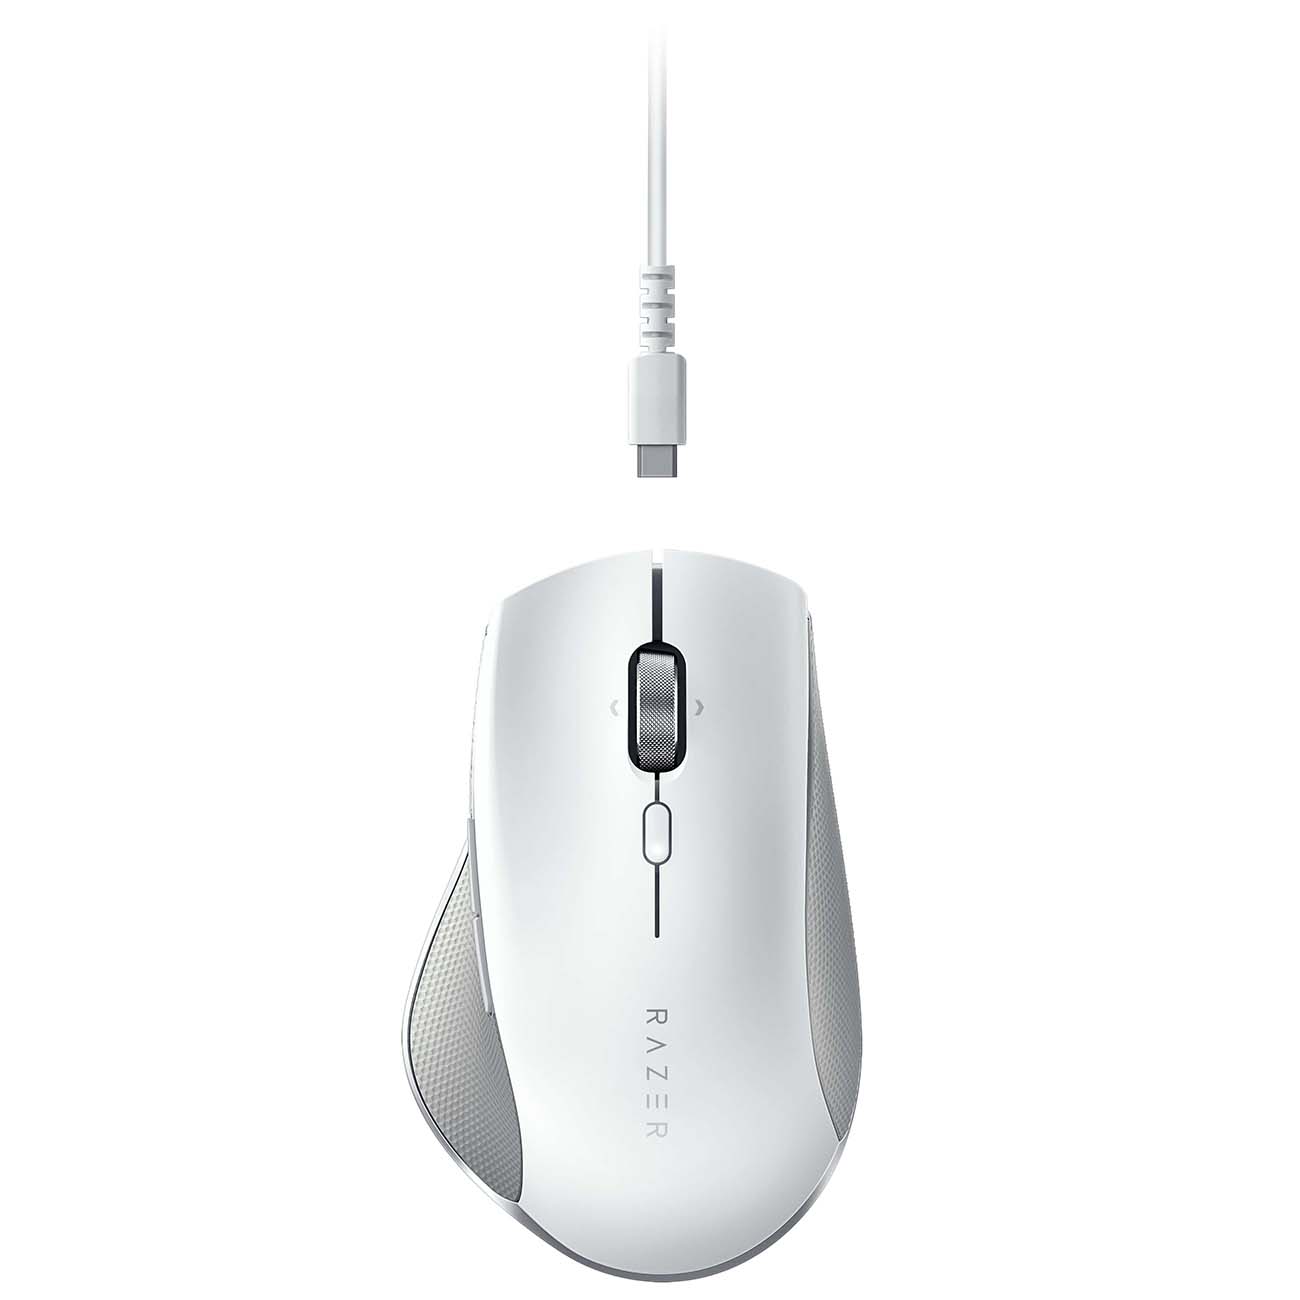 Мышь беспроводная Razer Pro Click Mouse (RZ01-02990100-R3M1) мышь беспроводная razer pro click mouse белый usb bluetooth